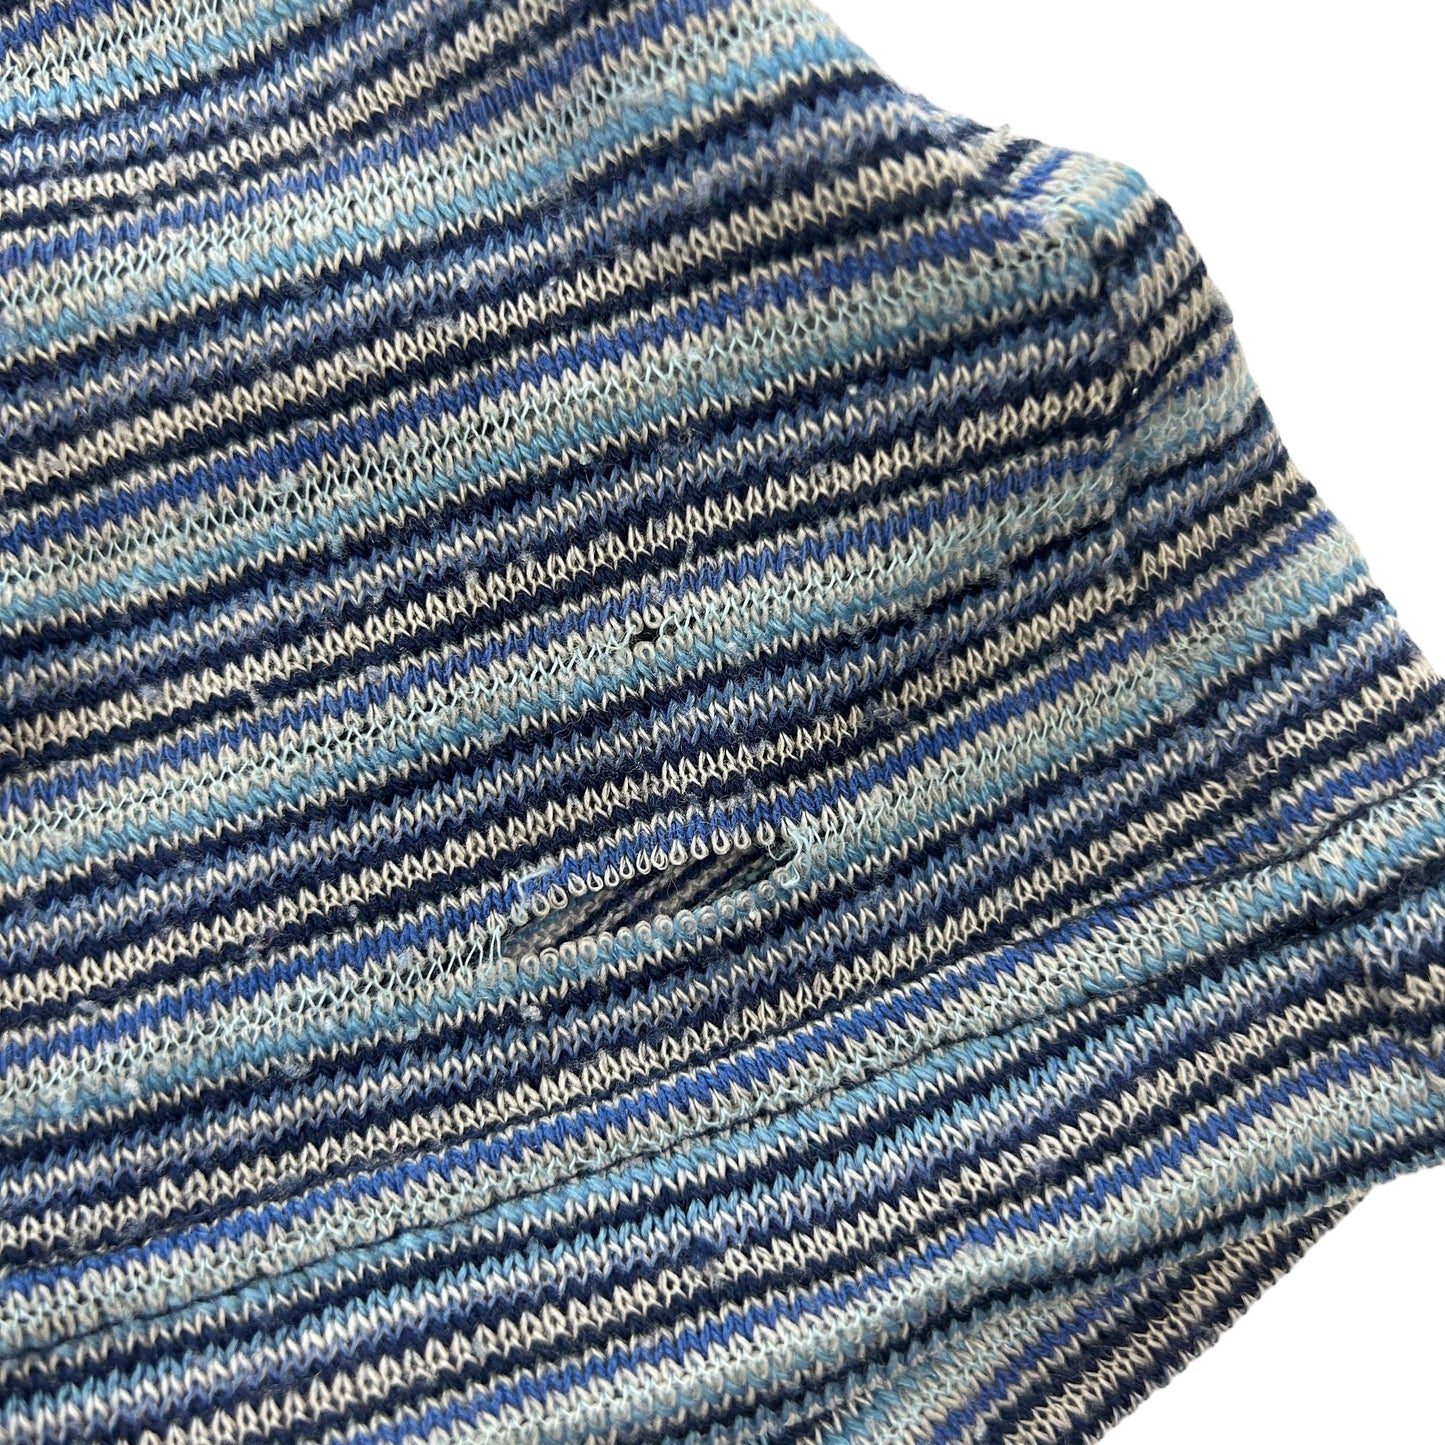 Vintage Comme Des Garcons Striped Knit T-Shirt Size S